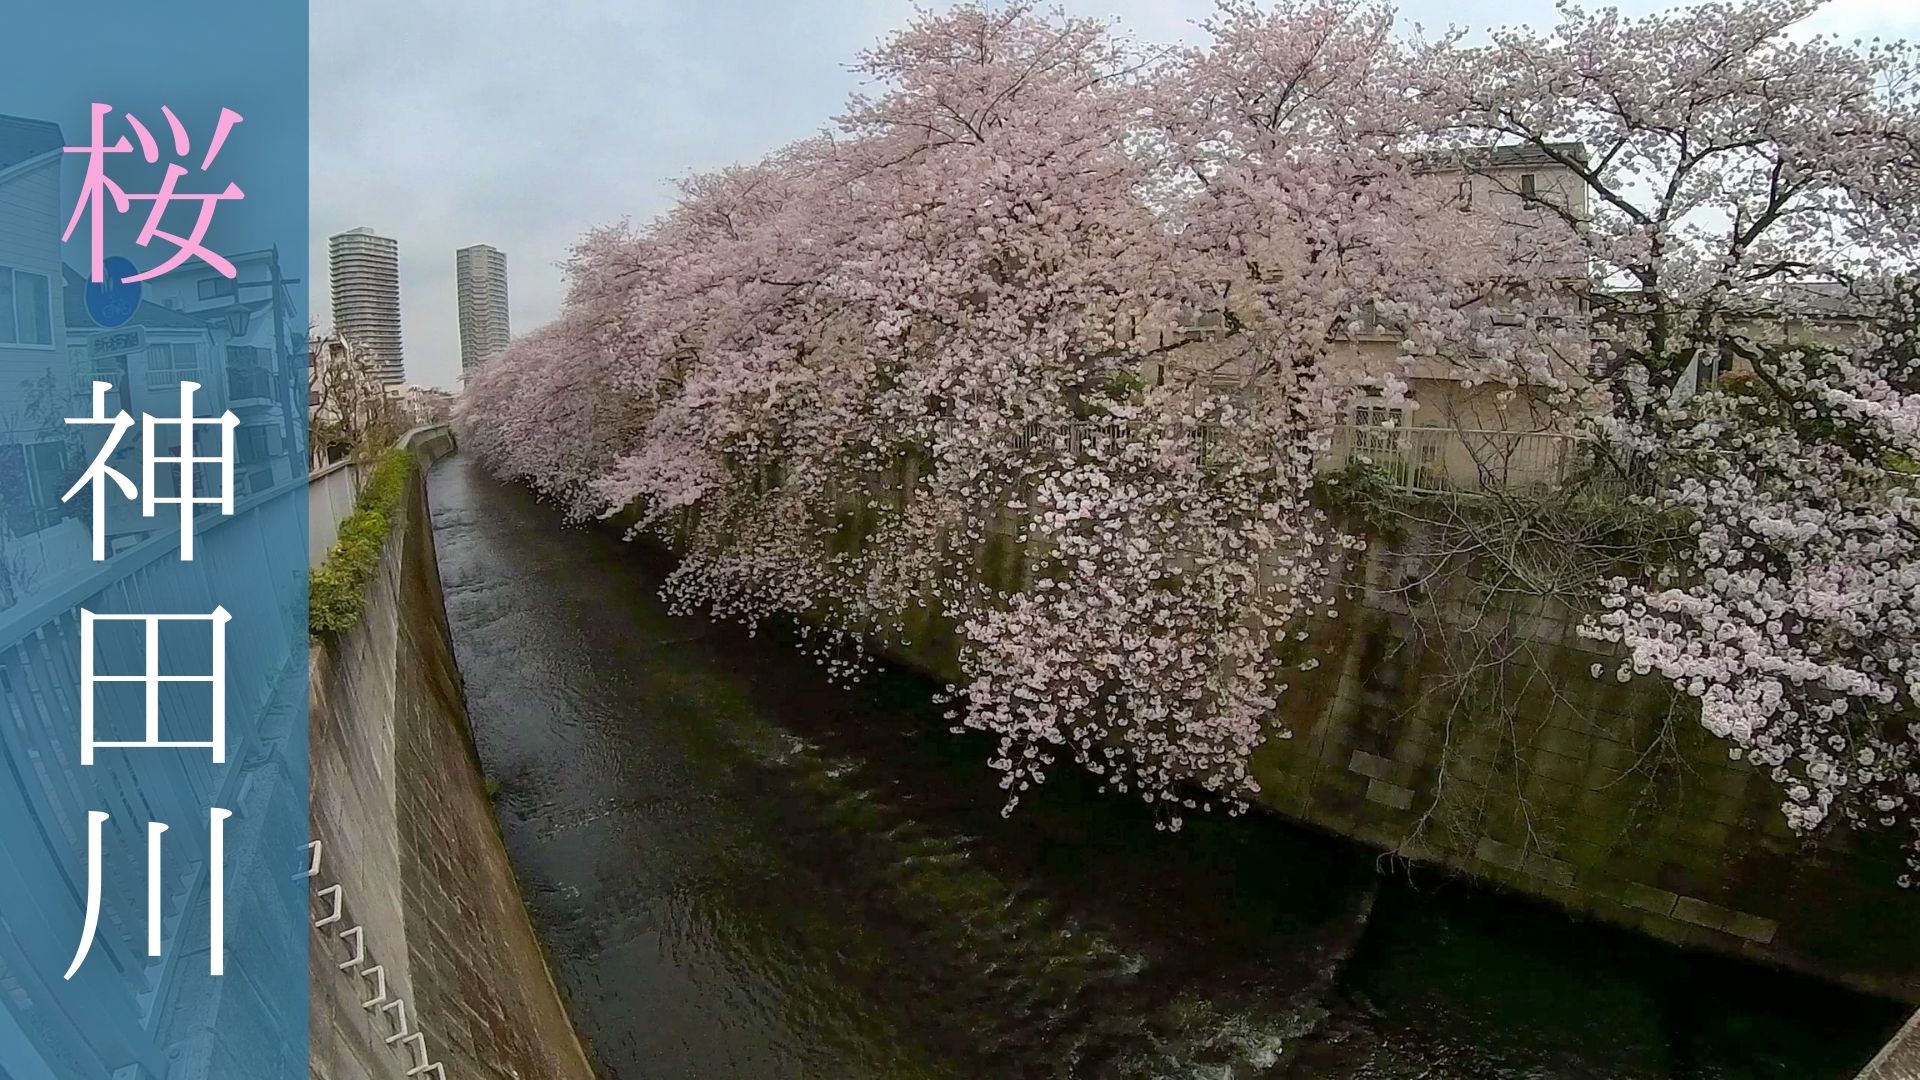 210413-散歩-神田川沿い遊歩道の桜並木を歩く-アイキャッチ画像